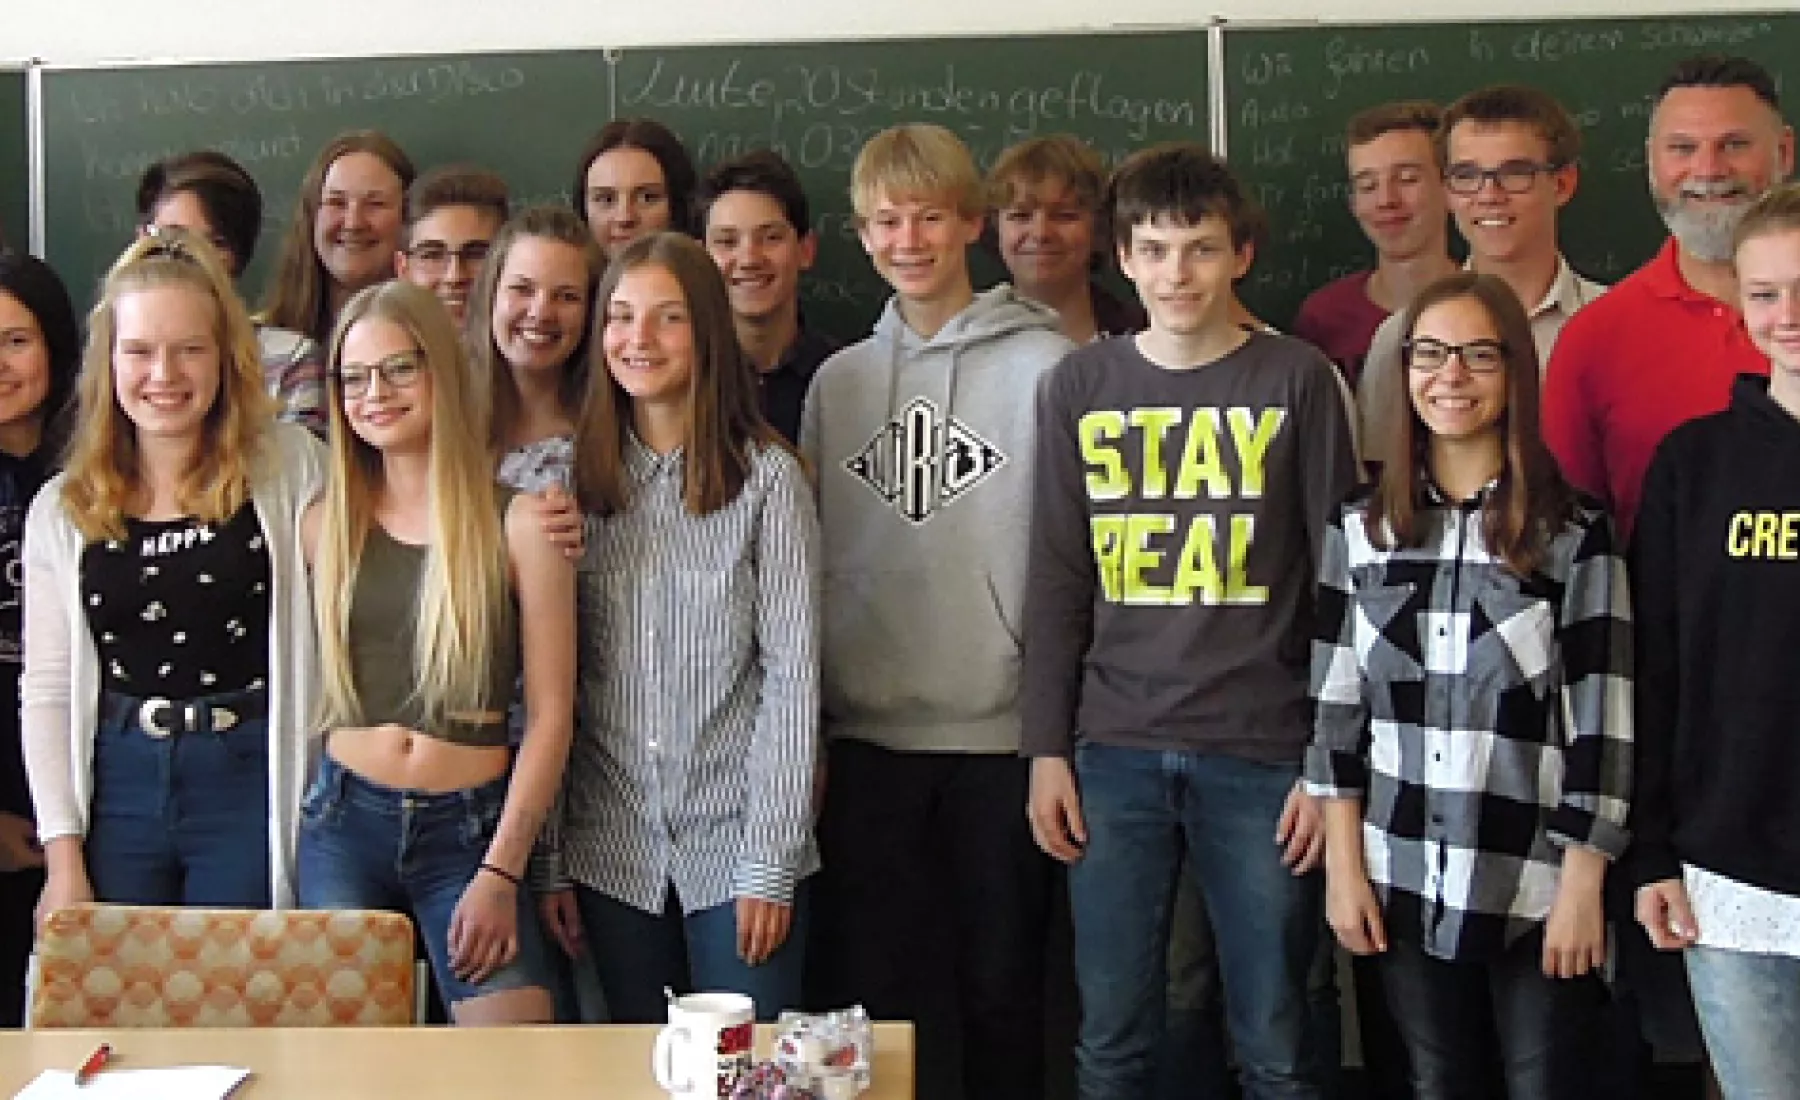 Klasse übersetzt in Bernburg